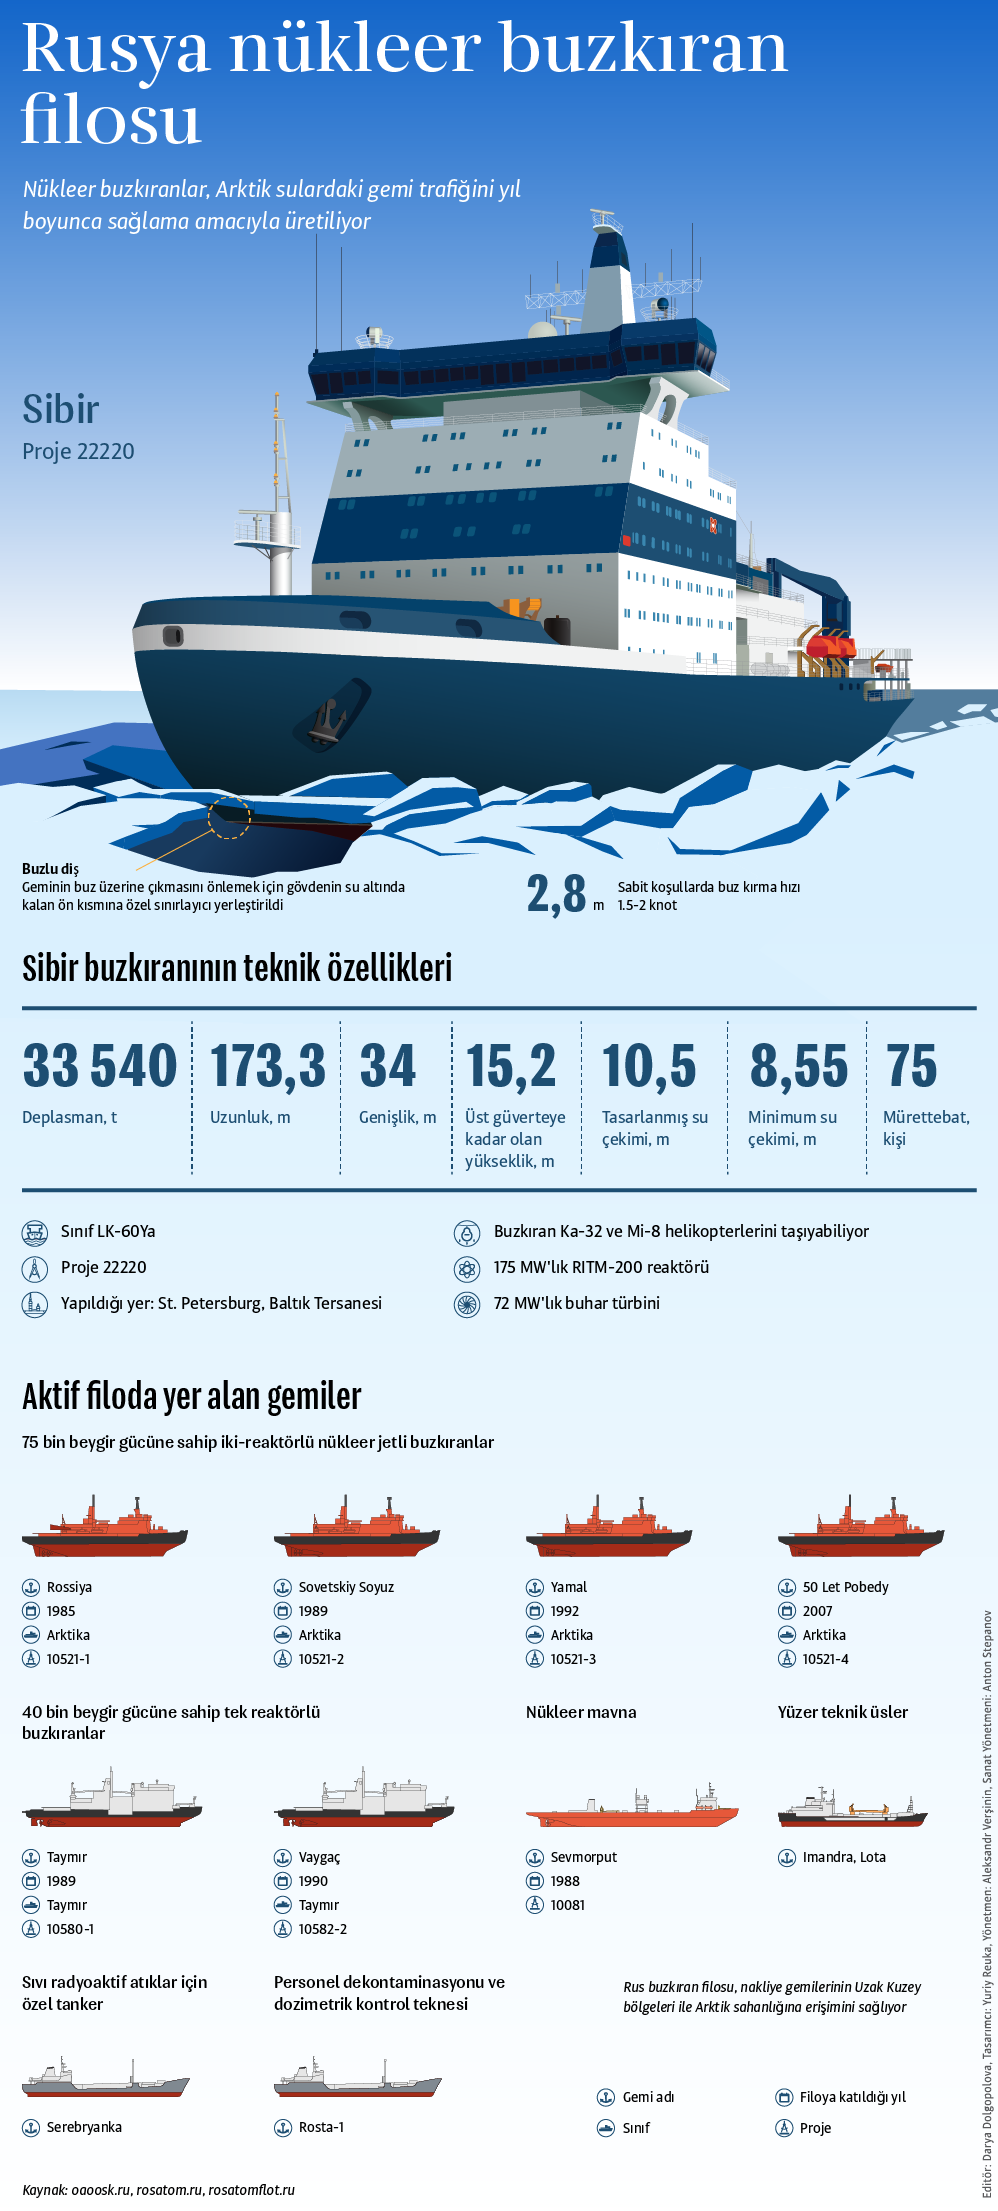 Dünyanın en güçlü nükleer buzkıran gemisi 'Sibir' - Sputnik Türkiye